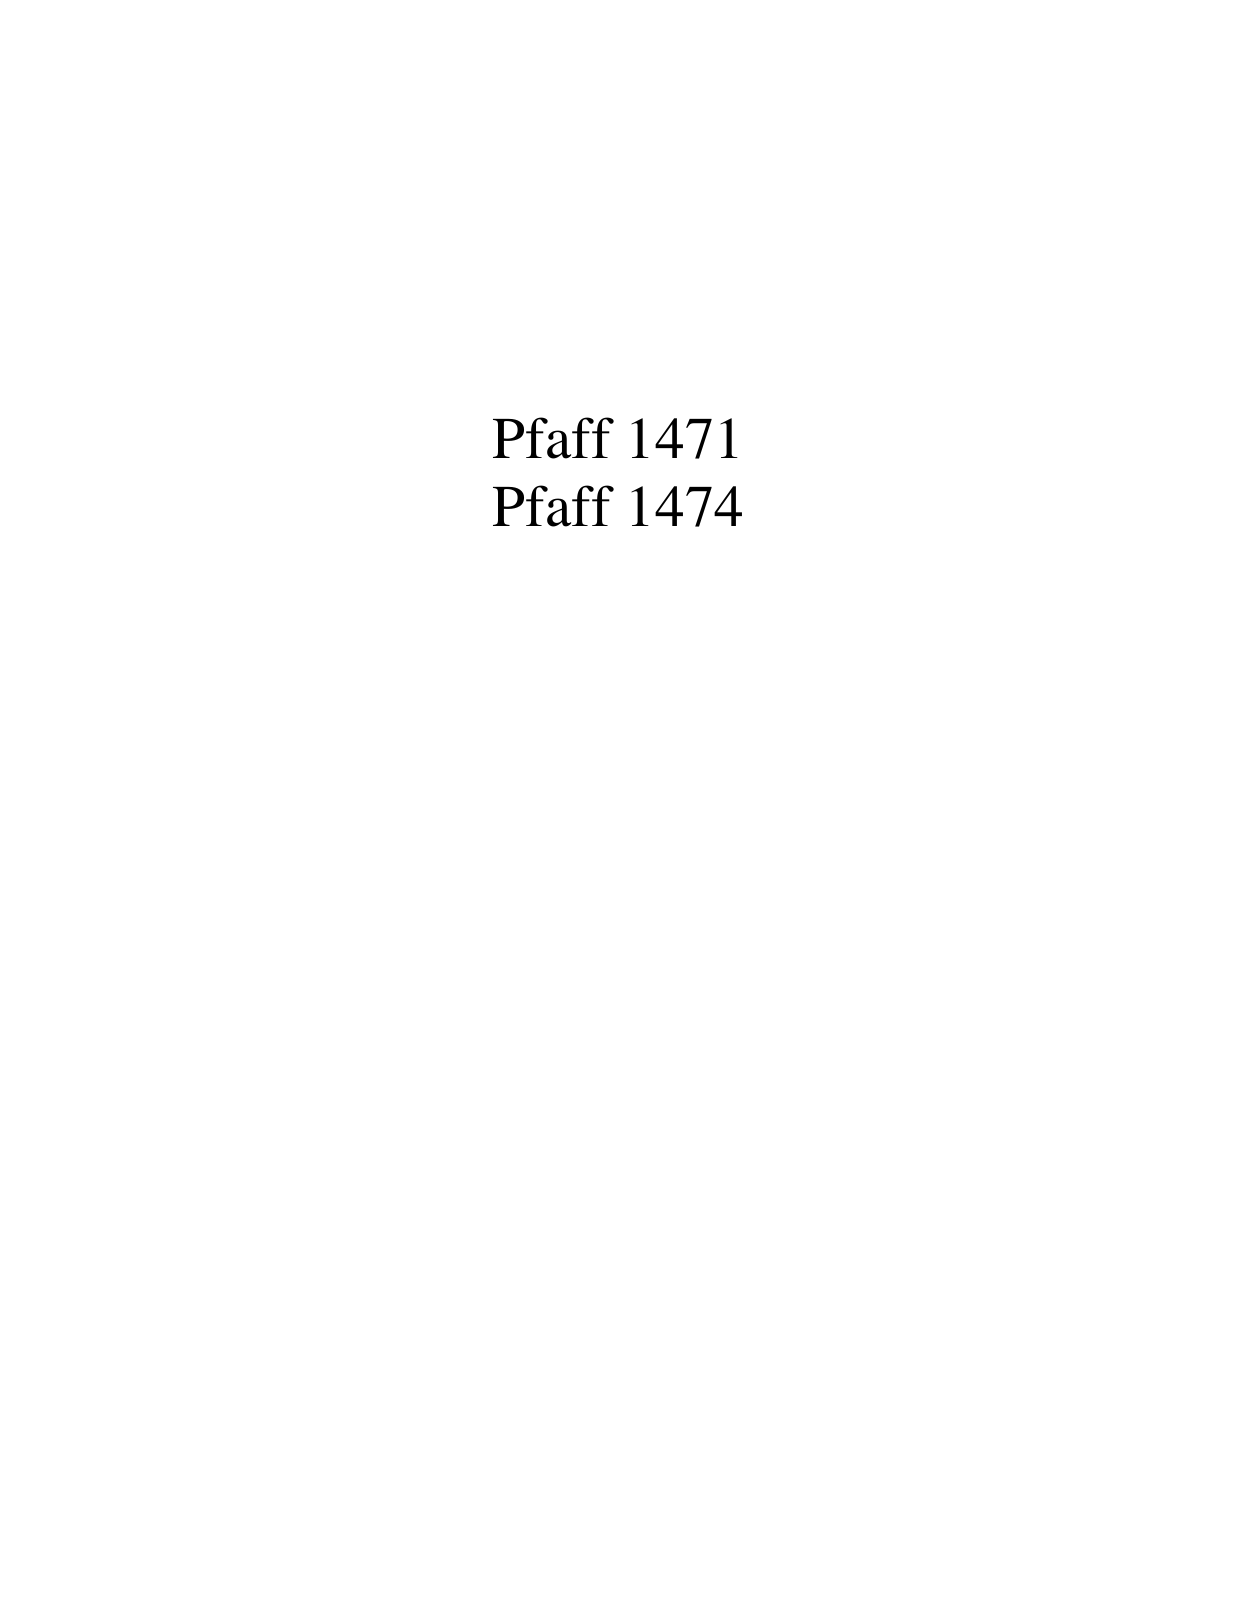 PFAFF 1471, 1474 Parts List